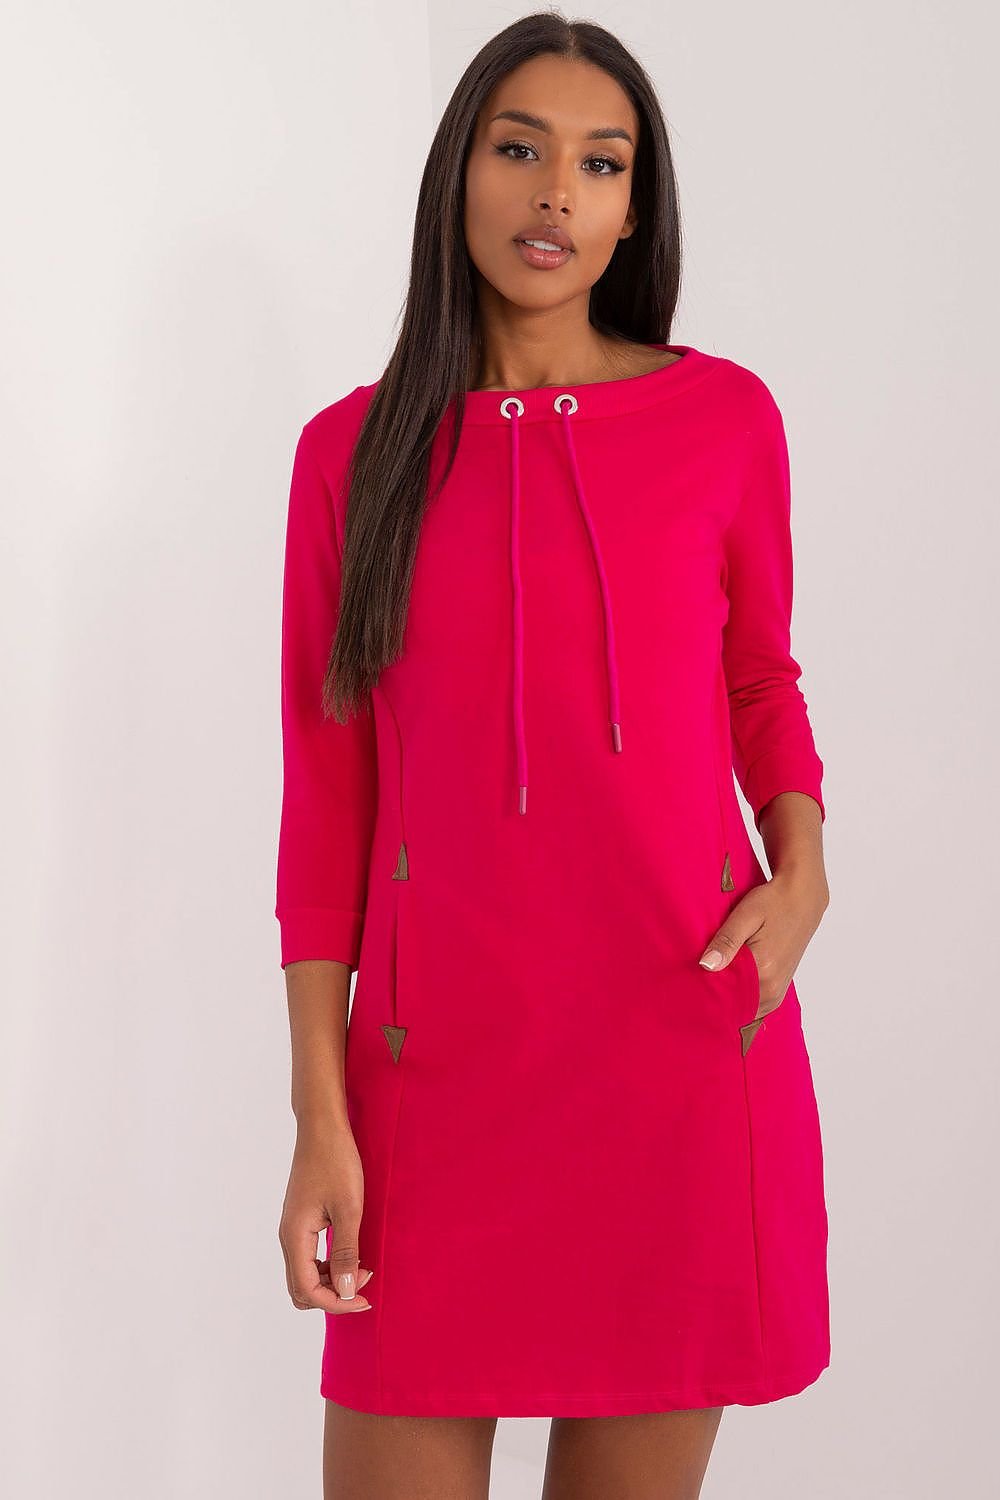 TEEK - Drawstring Pocketed Sweatshirt Daydress DRESS TEEK MH pink L/XL 